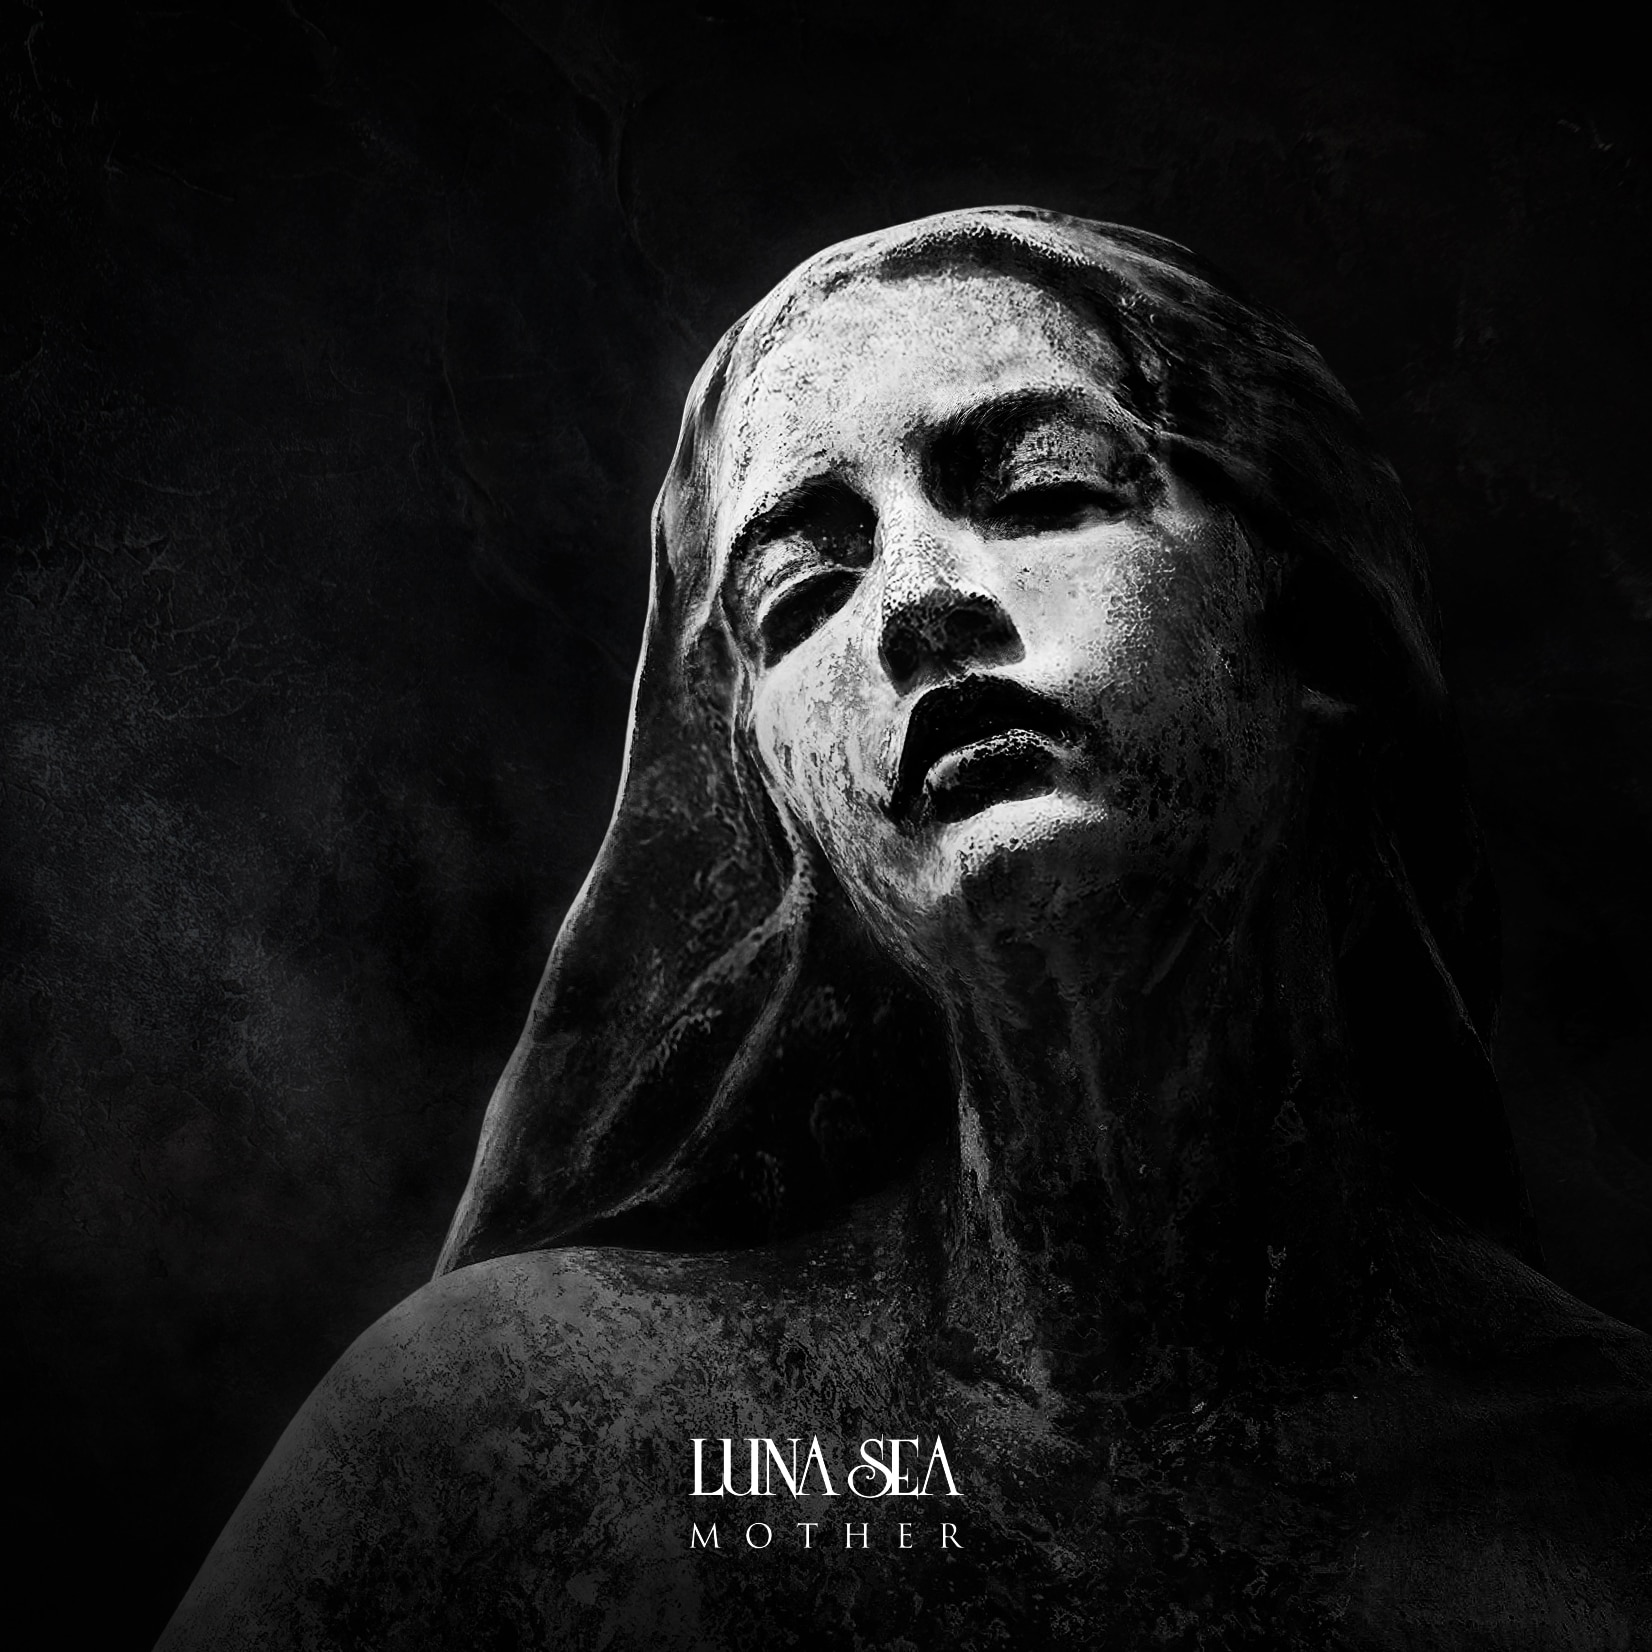 LUNA SEA  MOTHER STYLE SLAVE限定盤Blu-